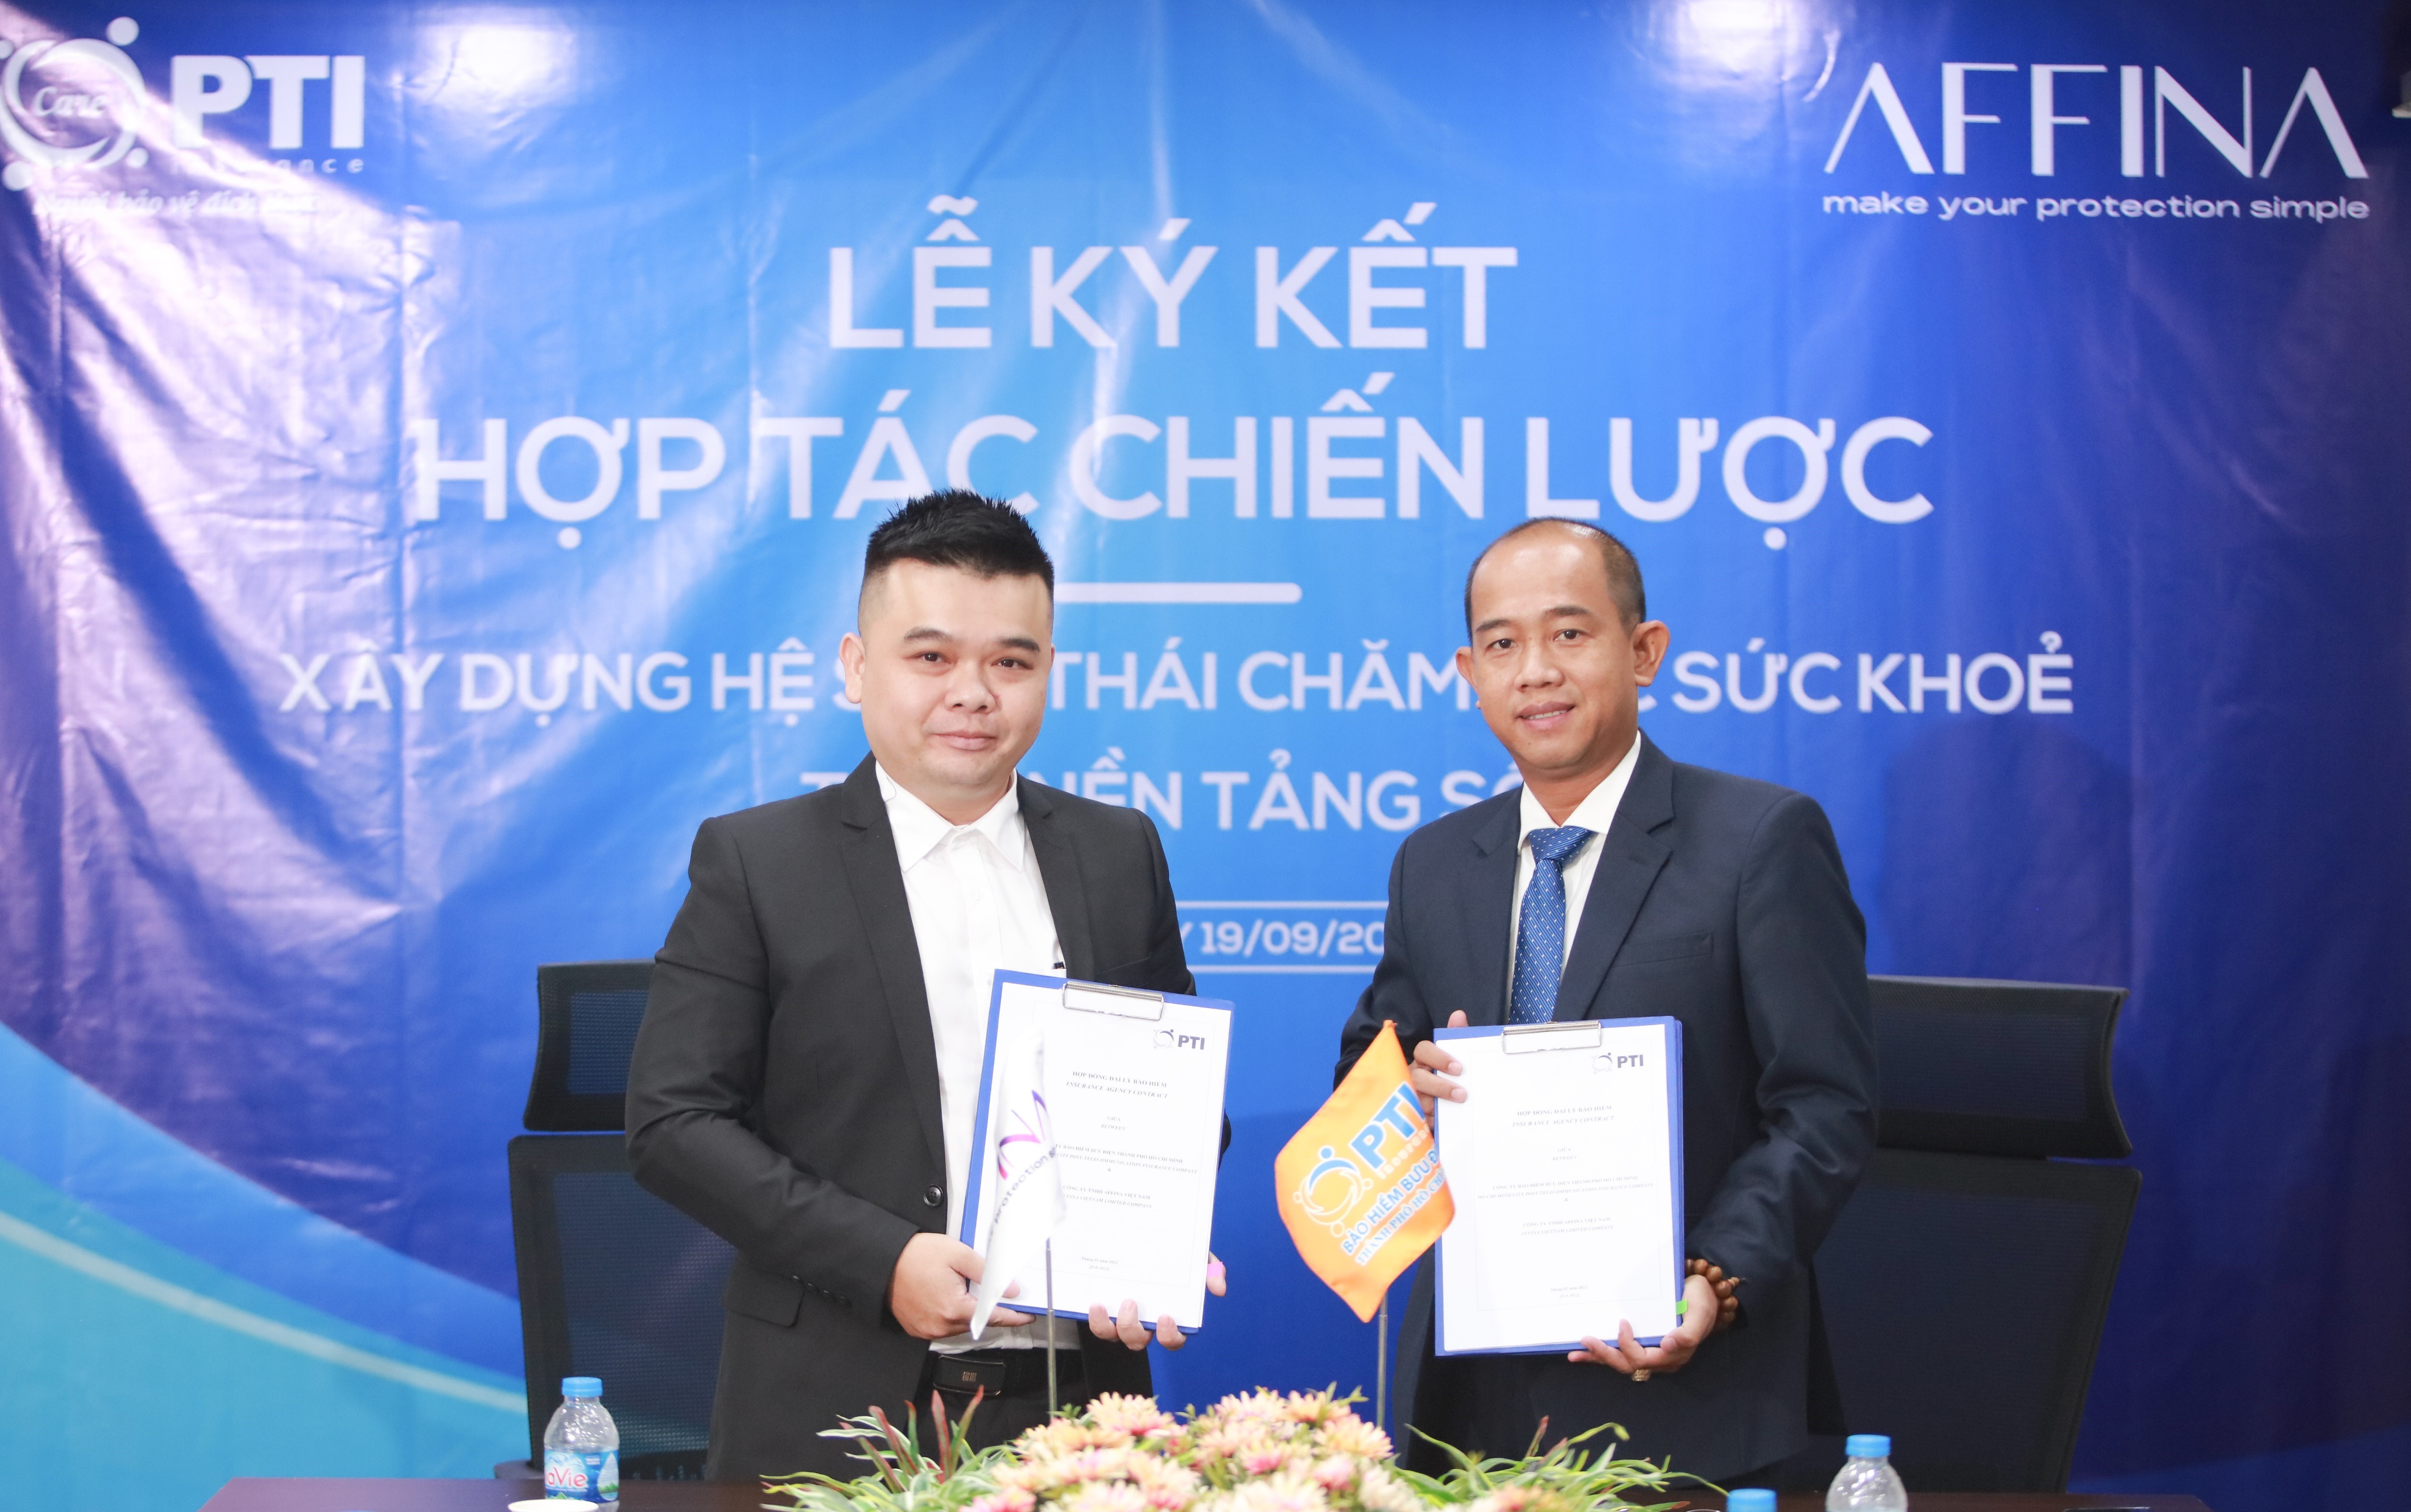 Công ty TNHH Affina Việt Nam và PTI Hồ Chí Minh ký kết hợp tác chiến lược